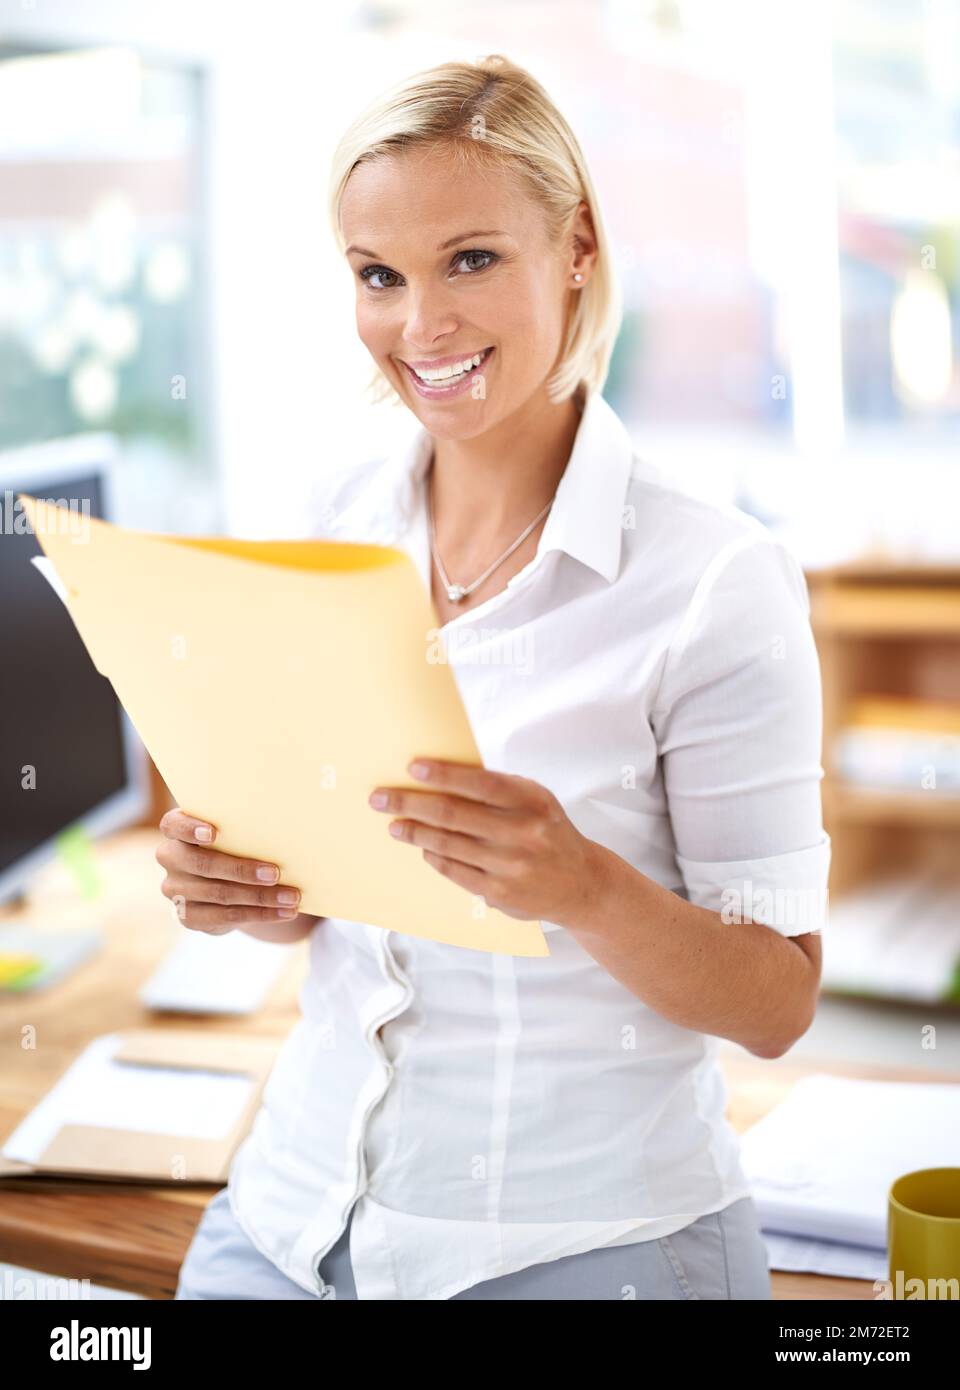 Abschließende Prüfung eines weiteren erfolgreichen Verkaufs. Porträt eines attraktiven jungen Büroangestellten, der Papierkram liest. Stockfoto